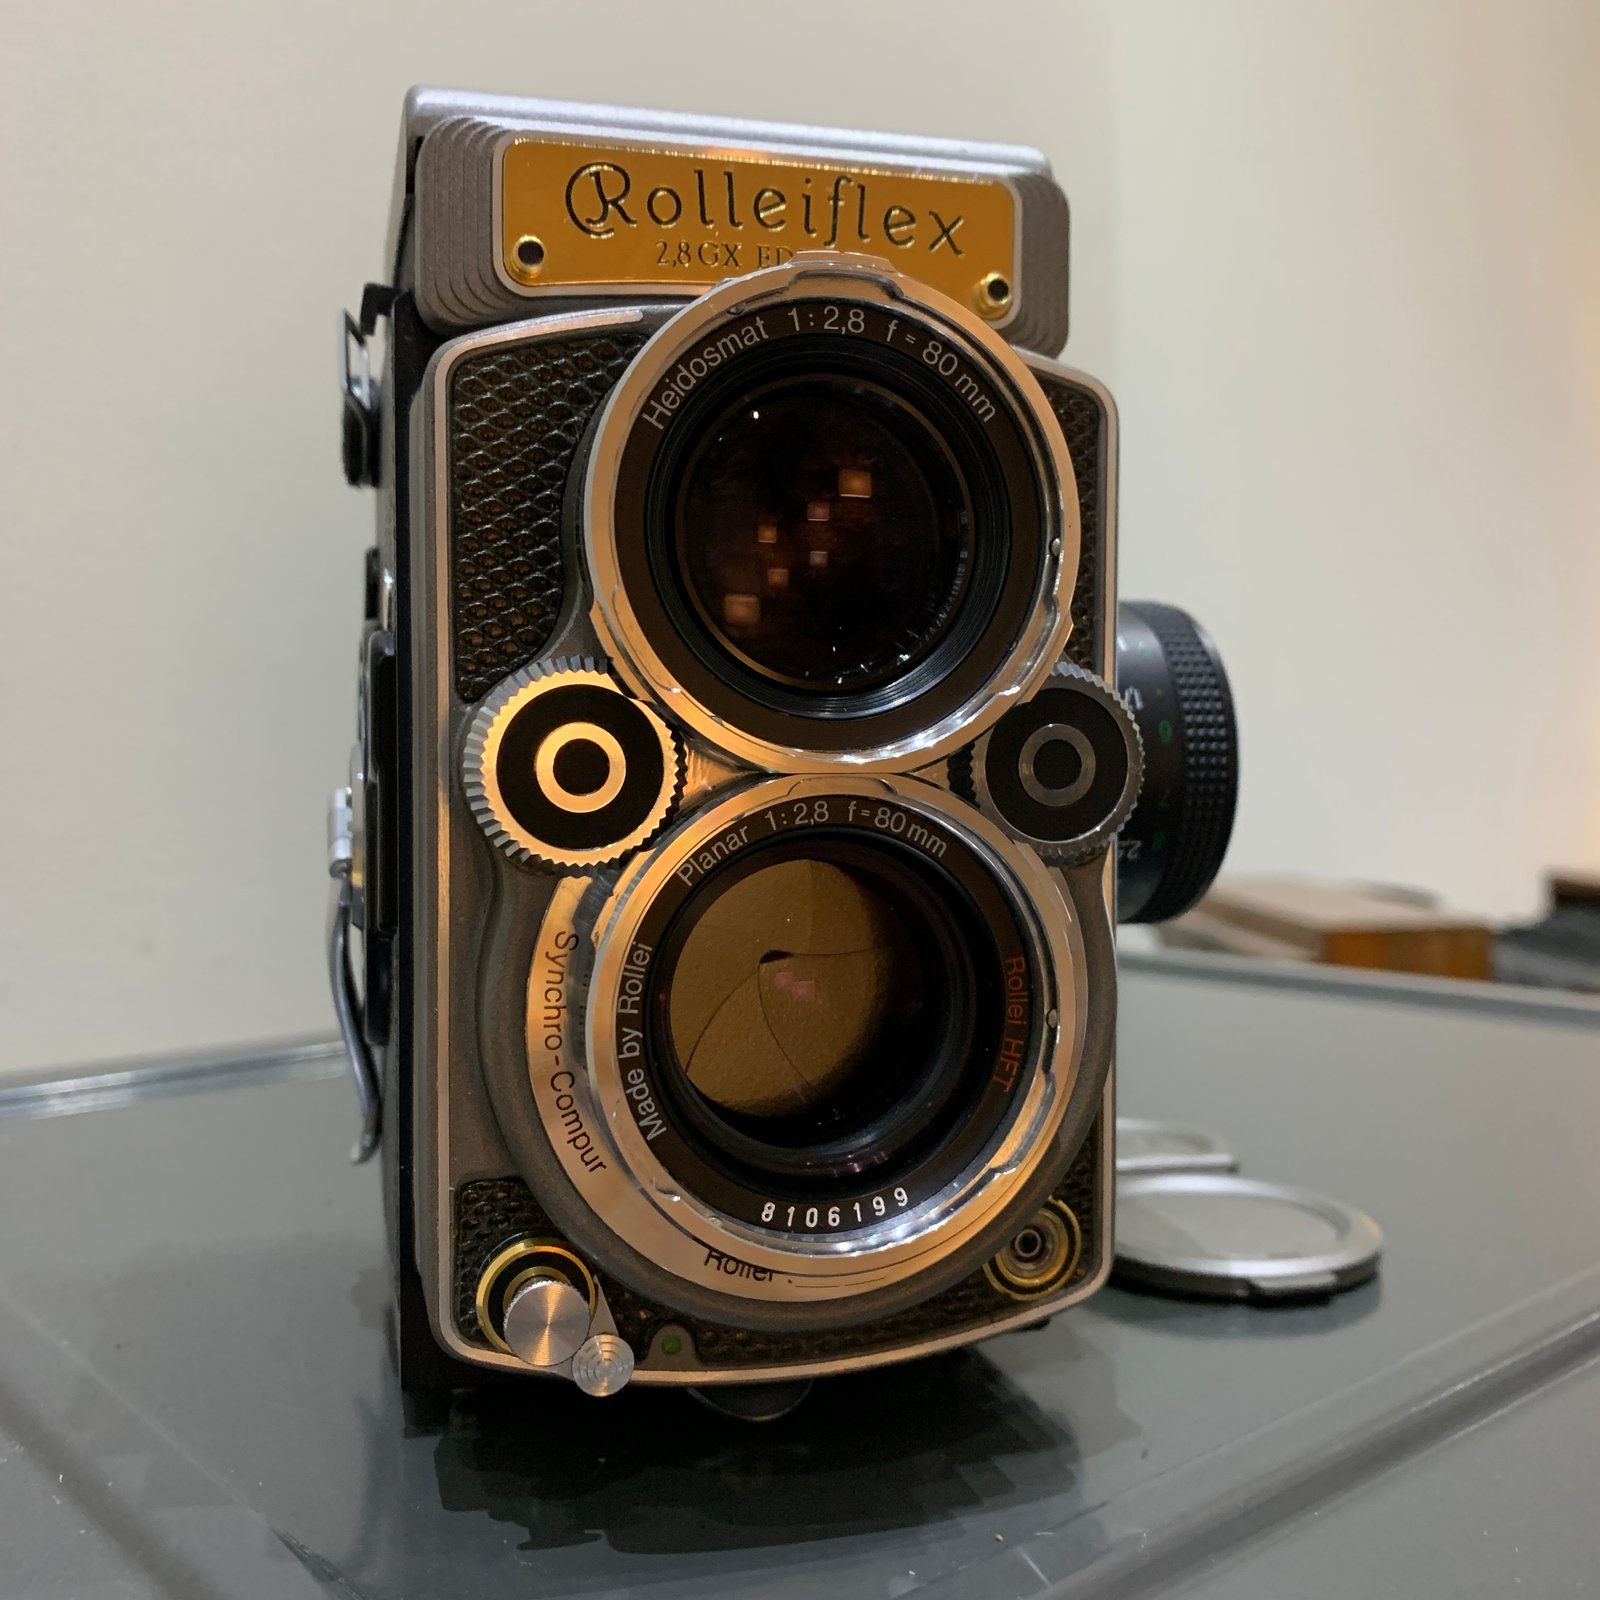 Rolleiflex 2.8GX 60 Jahre Anniversary 1929-1989 Mint in box 